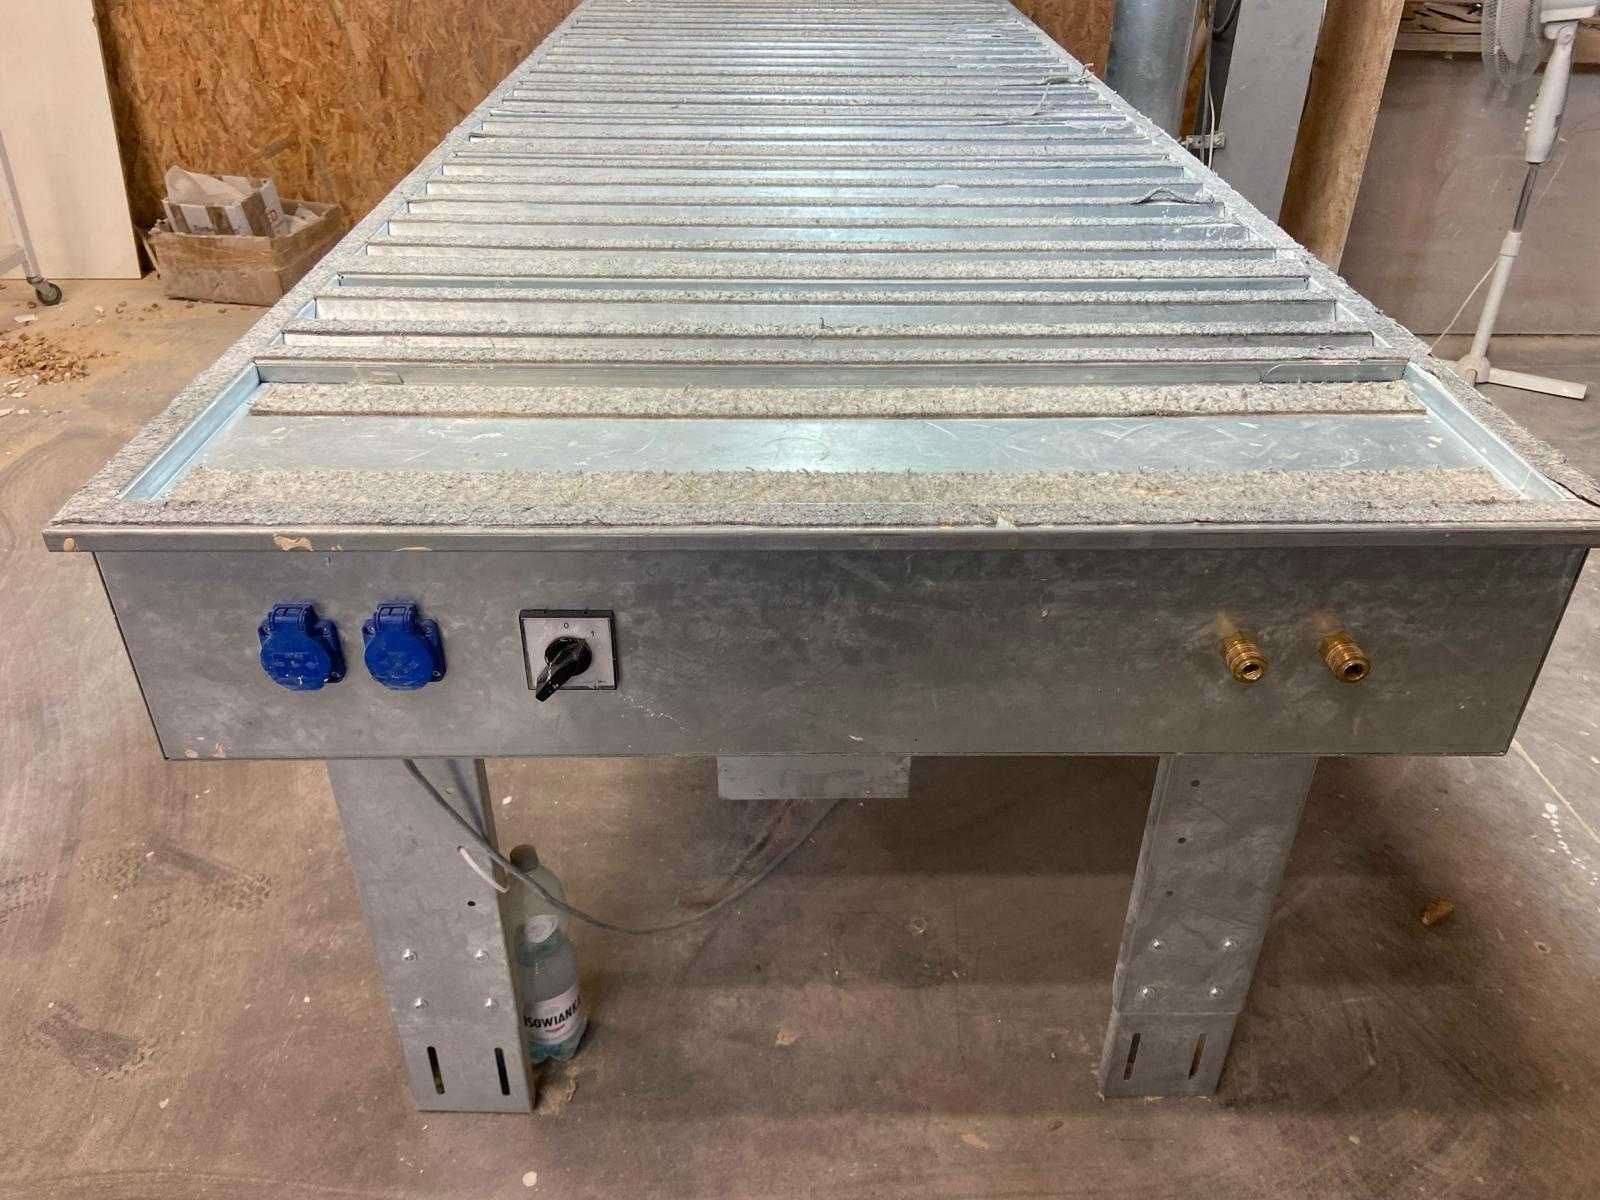 Stół szlifierski OPAL30 3x1m + panel przyłączeniowy